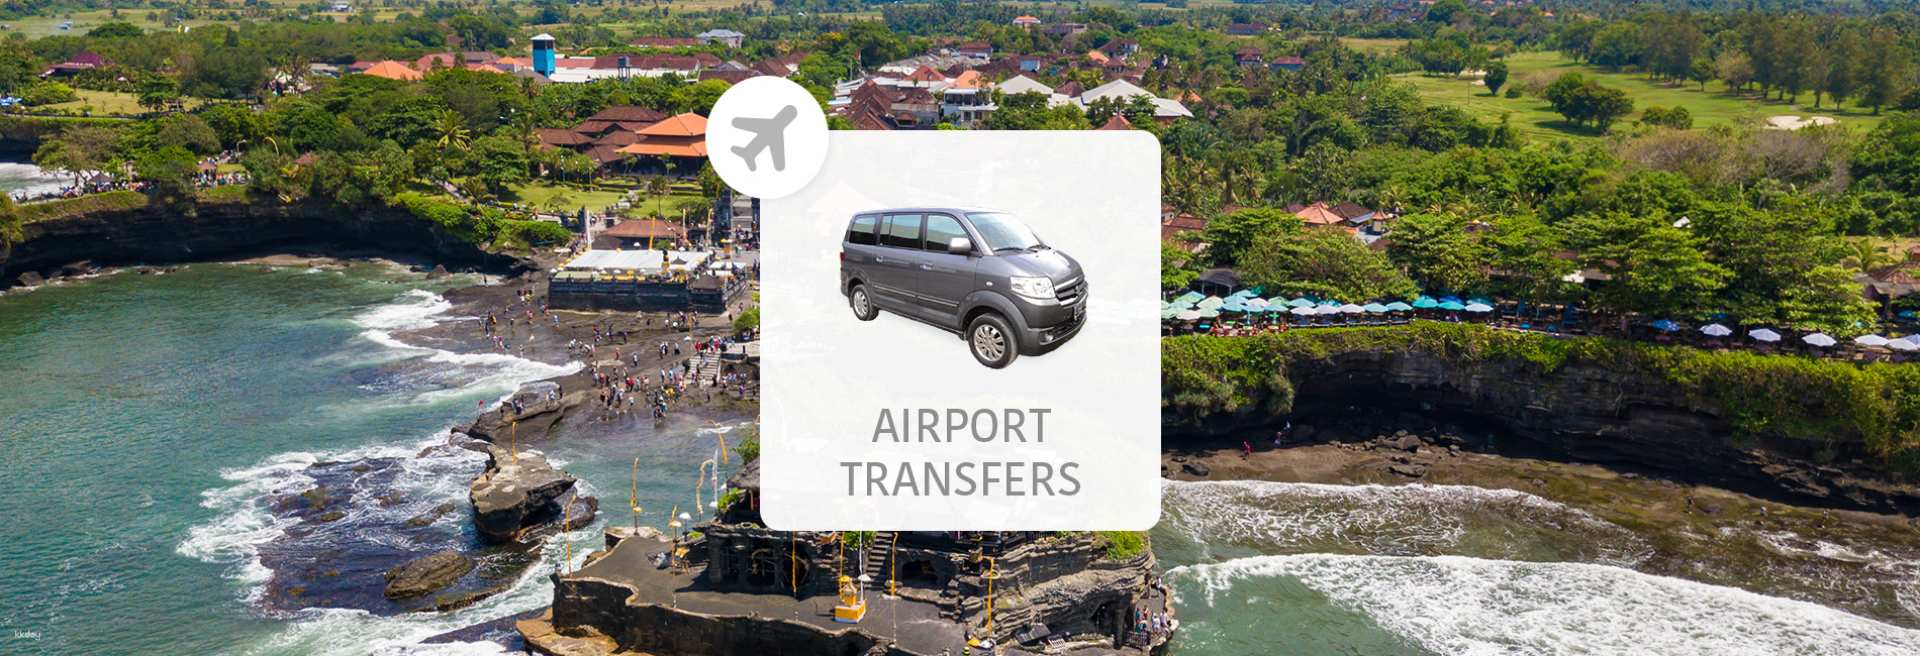 印尼-峇里島機場(DPS)至烏布/海神廟區飯店/佩卡圖/烏魯瓦圖地區| 機場接送服務